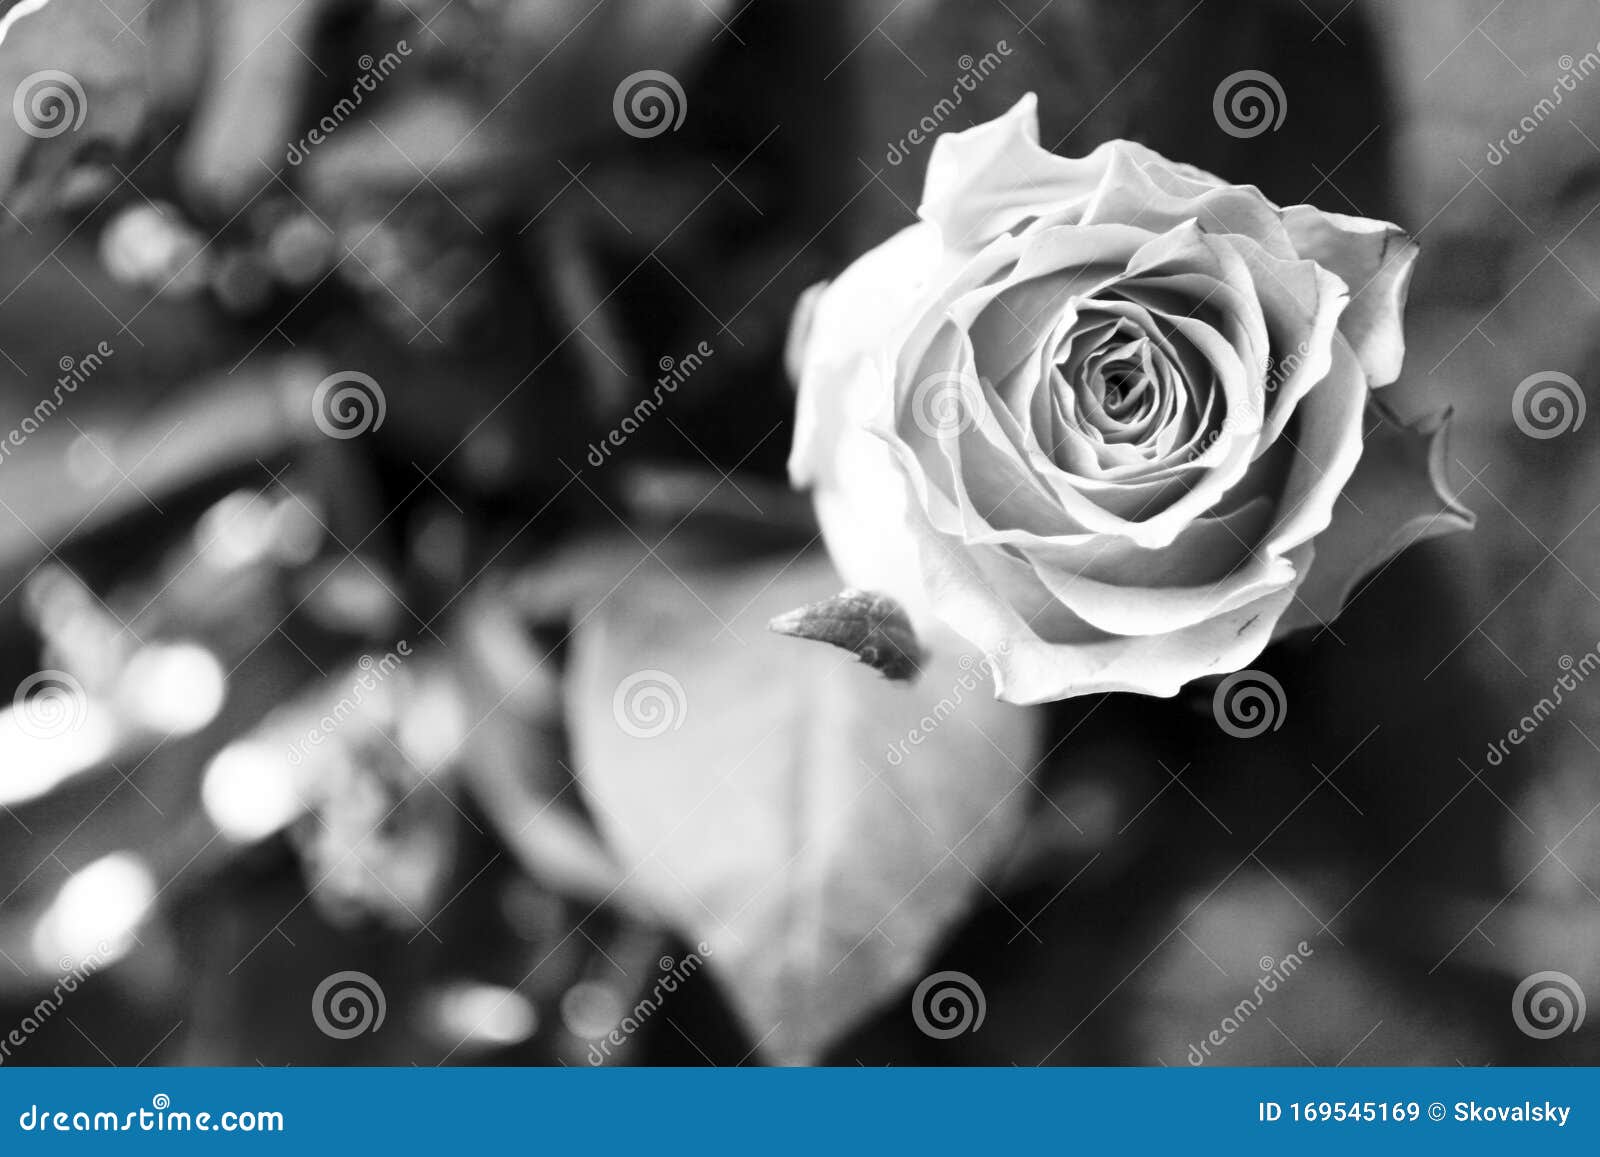 黑白玫瑰花朵图片素材-编号04413825-图行天下